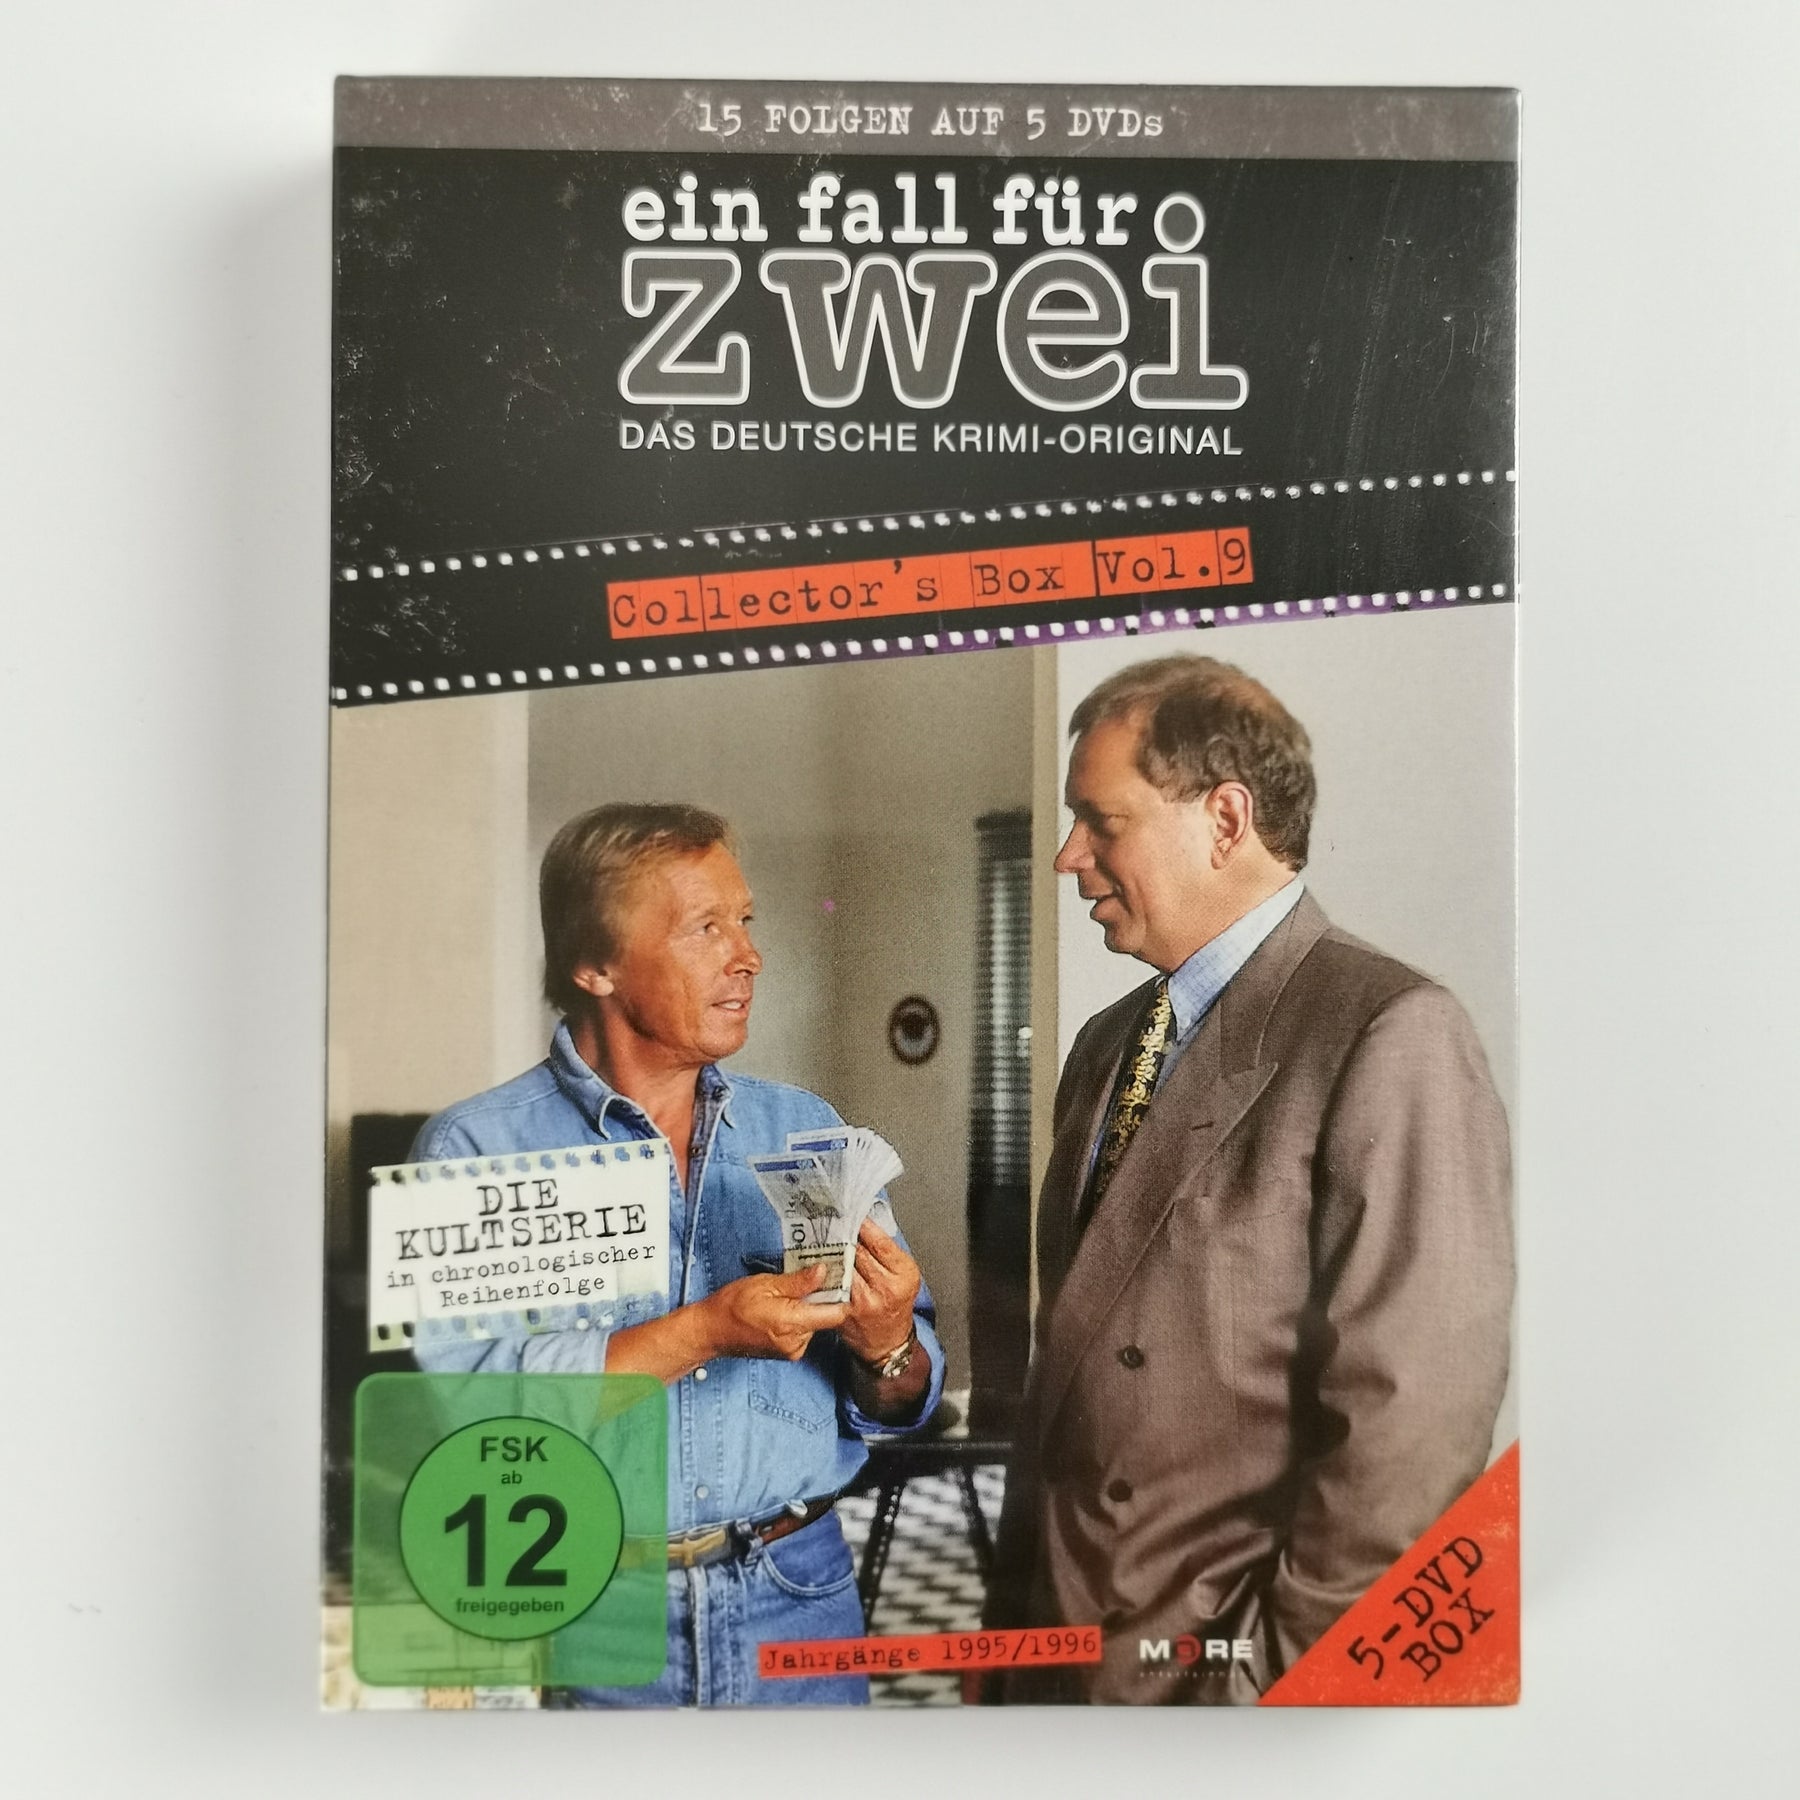 Ein Fall fuer Zwei Collectors Box 9 (DVD) [Neu]